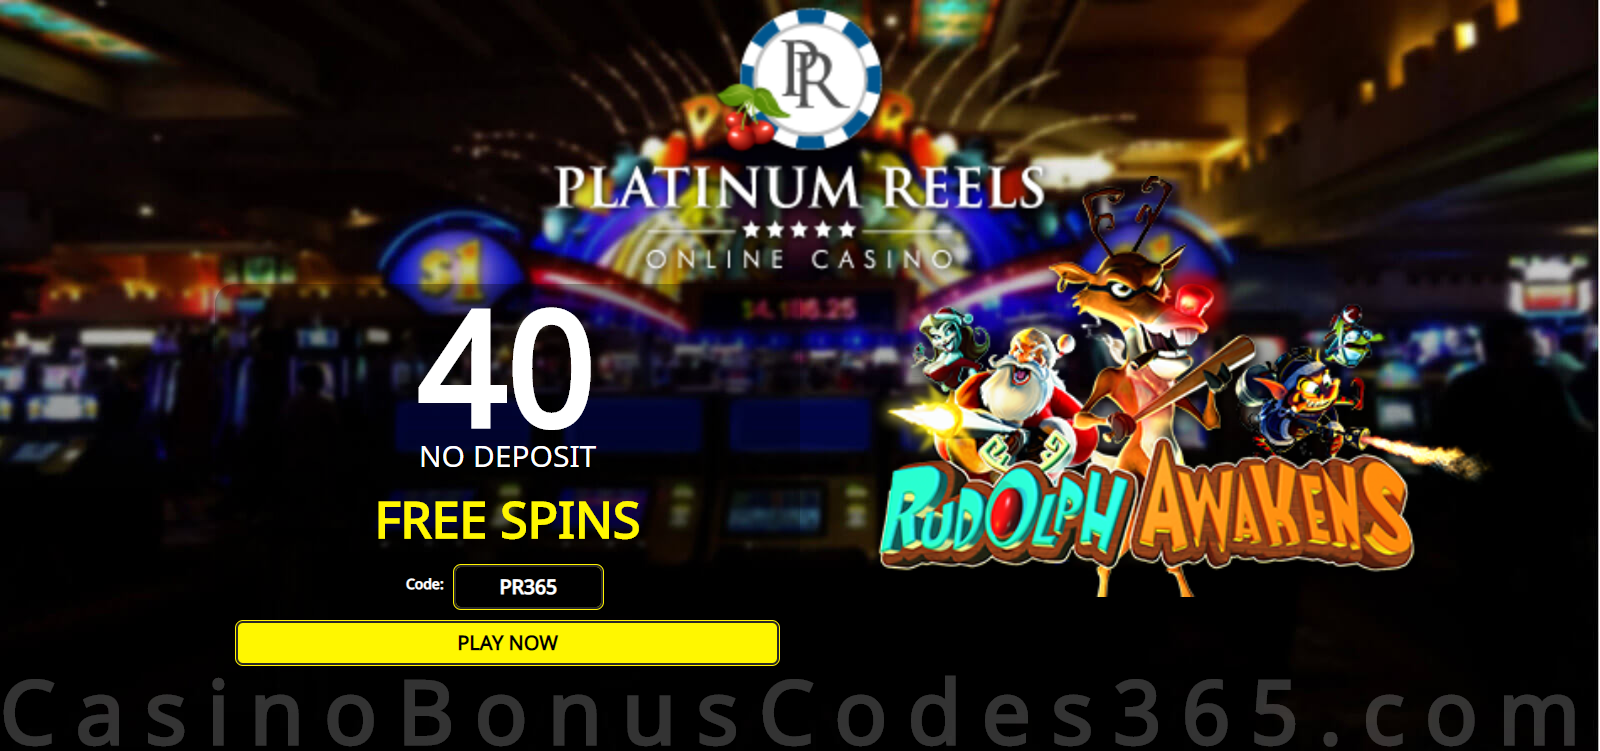 Platinum reels bonus code